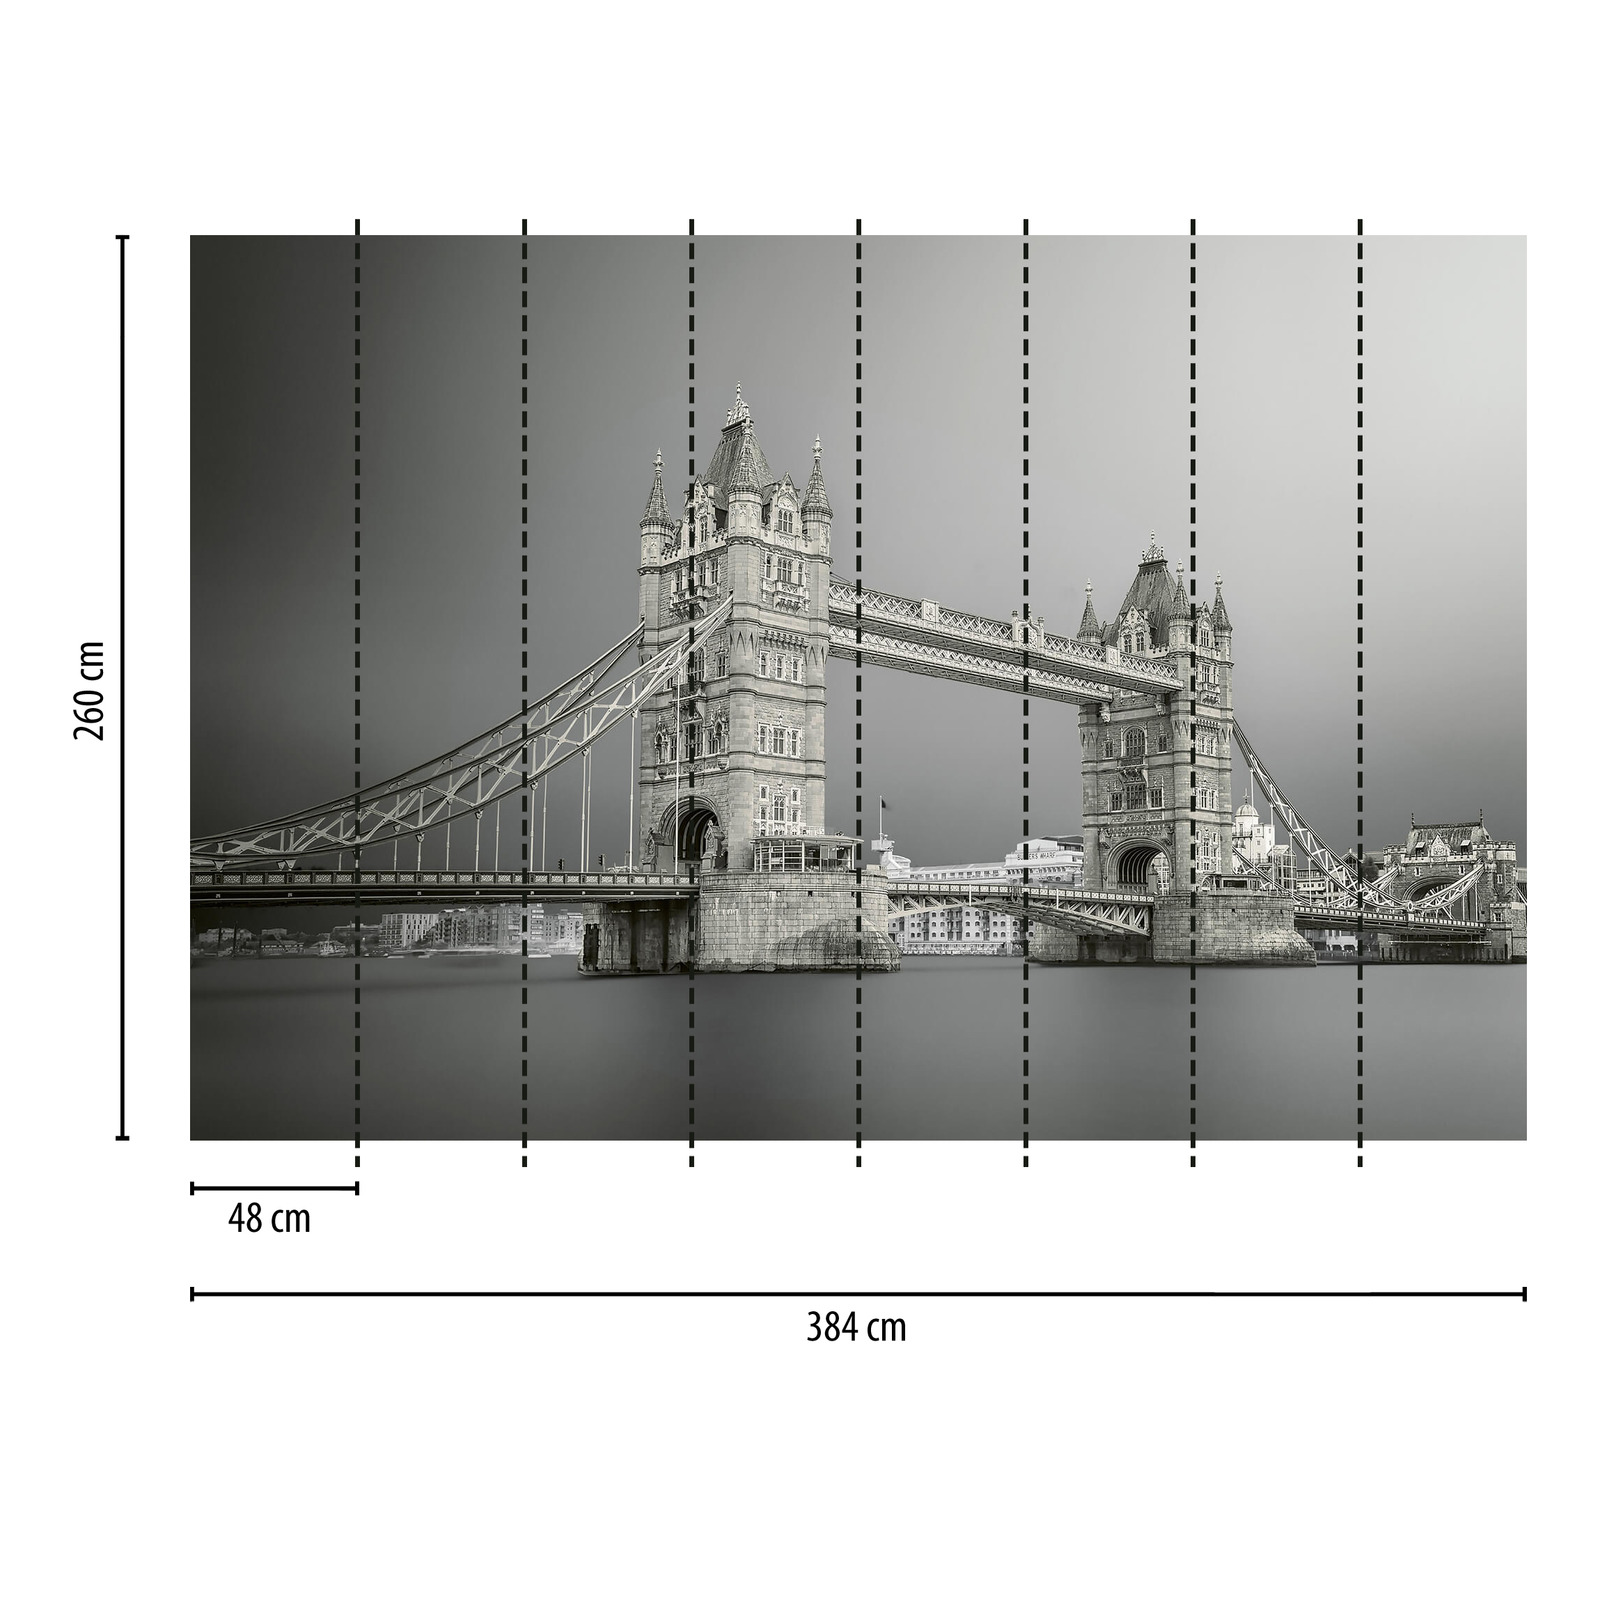             Papel pintado Tower Bridge London - Gris, blanco, negro
        